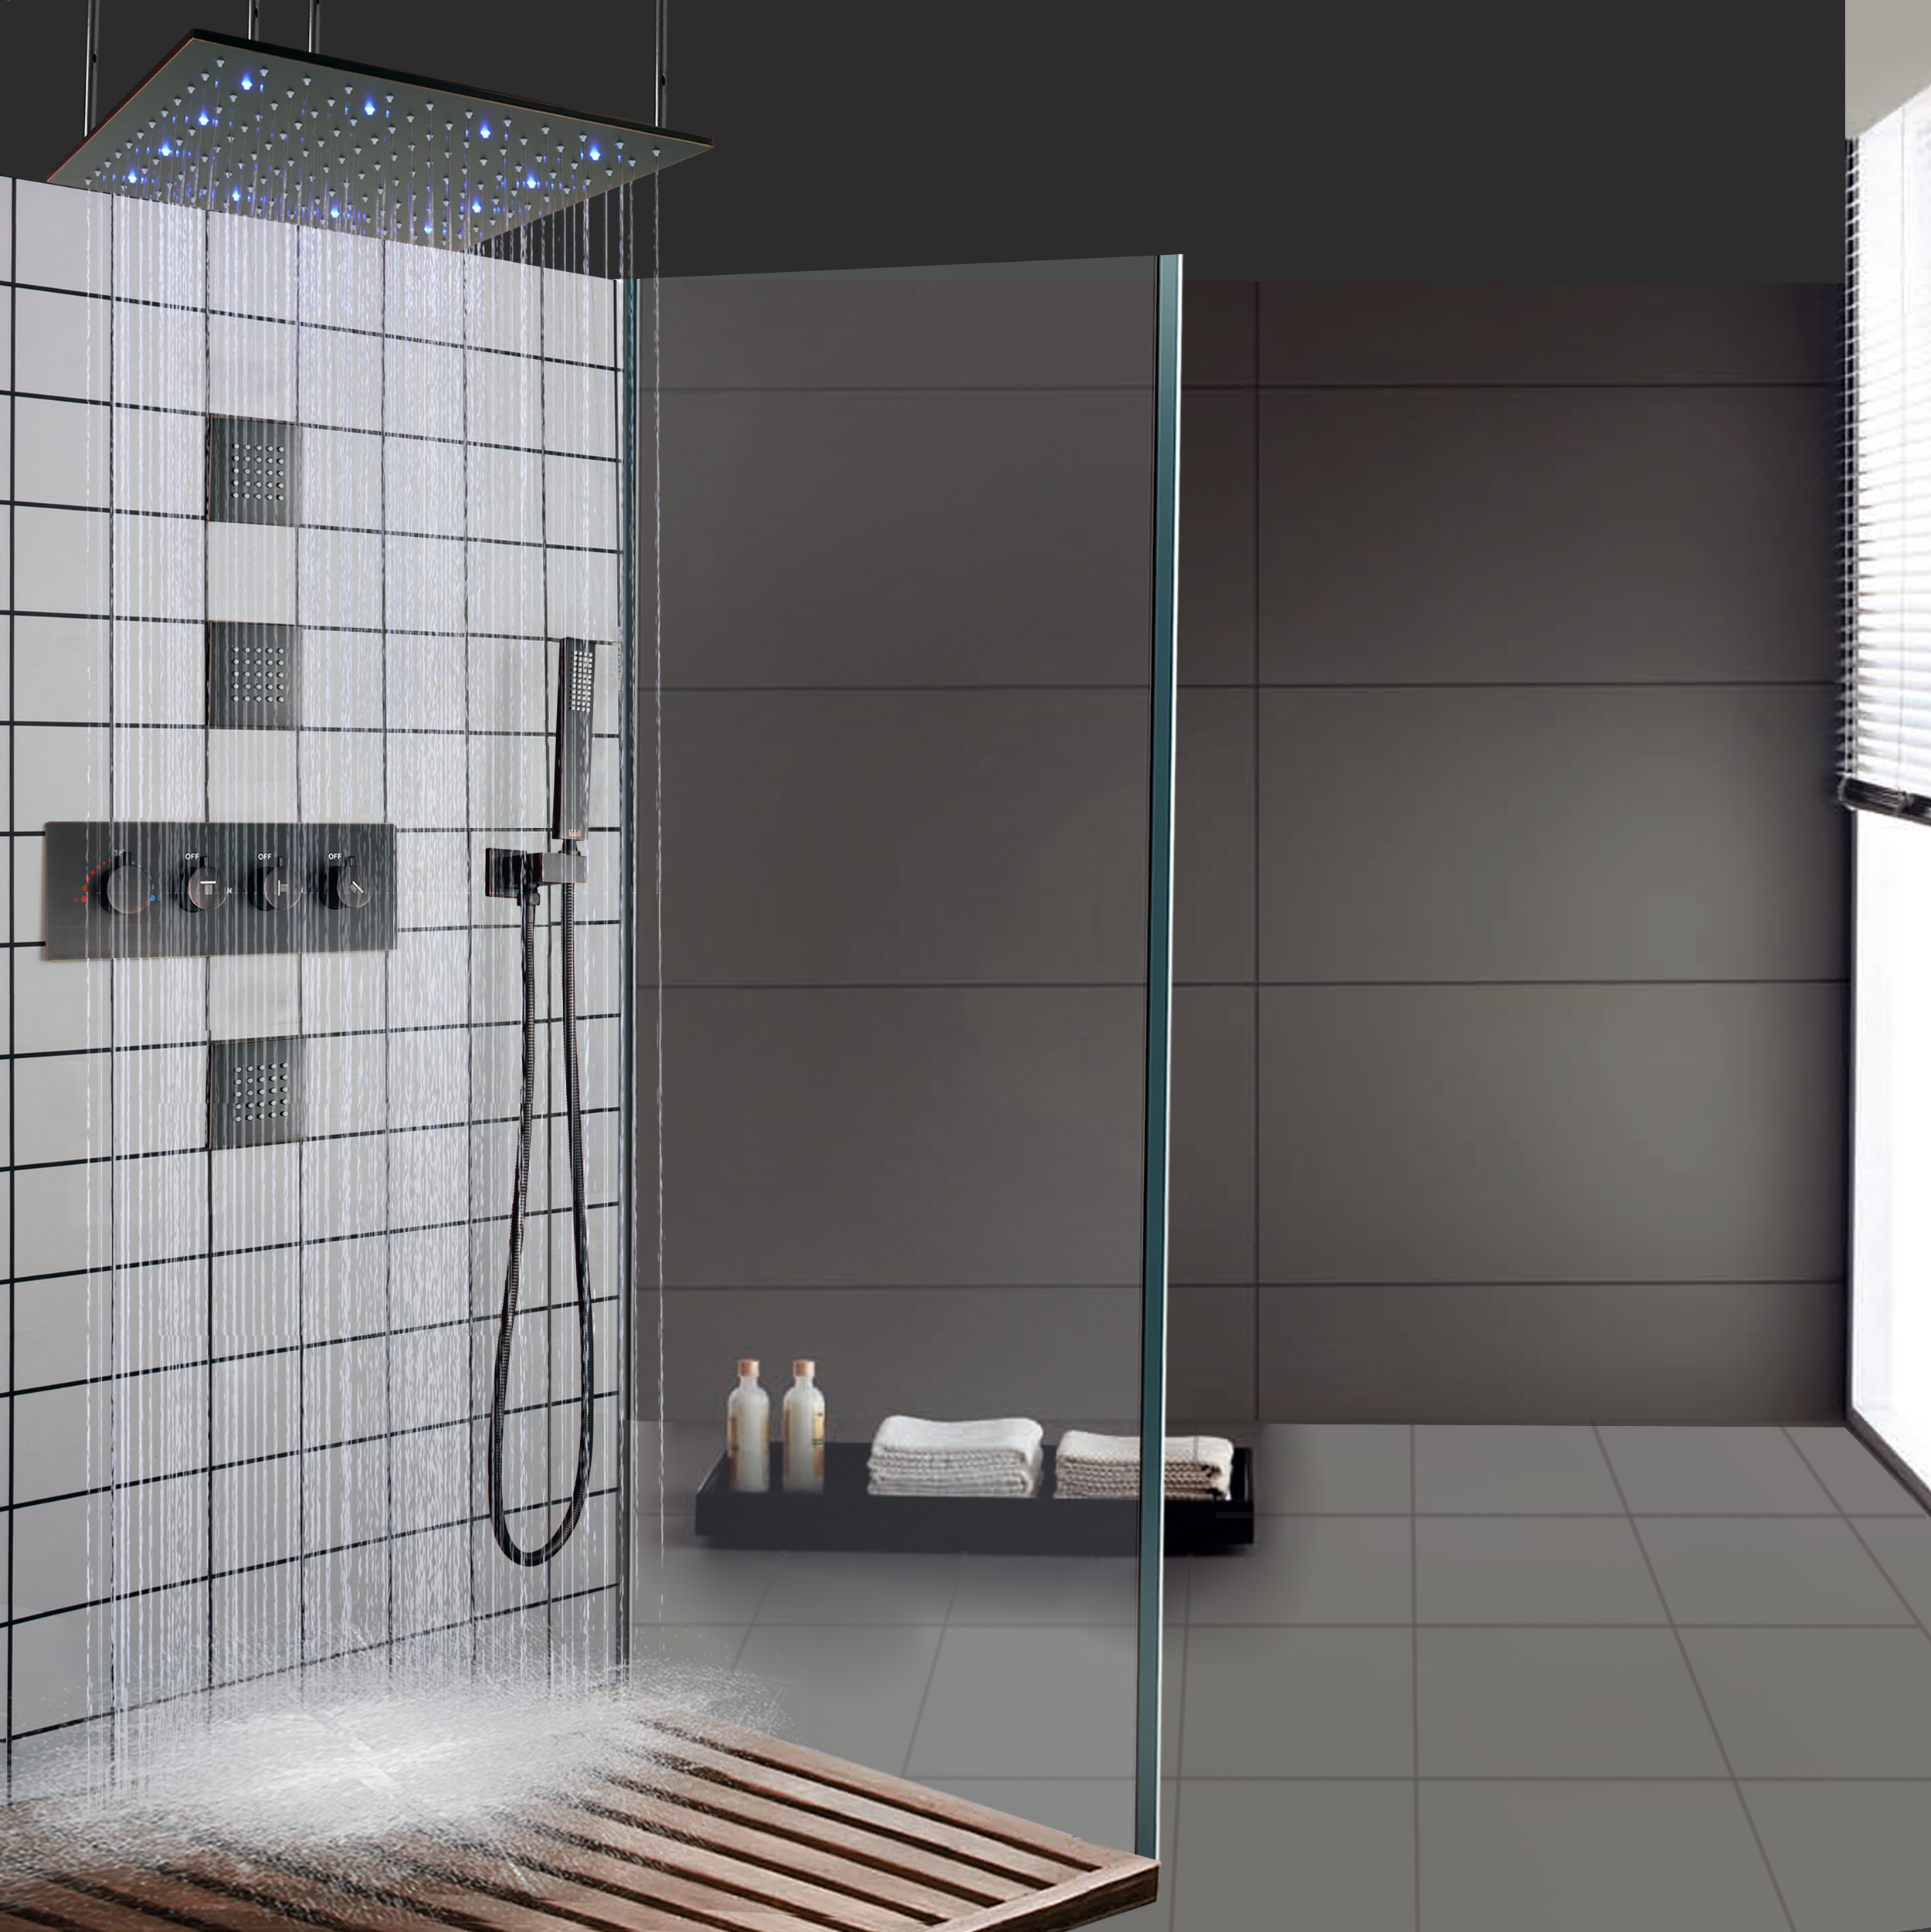 Óleo esfregado bronze led termostática misturador do chuveiro do banheiro teto chuvas braço de chuveiro portátil